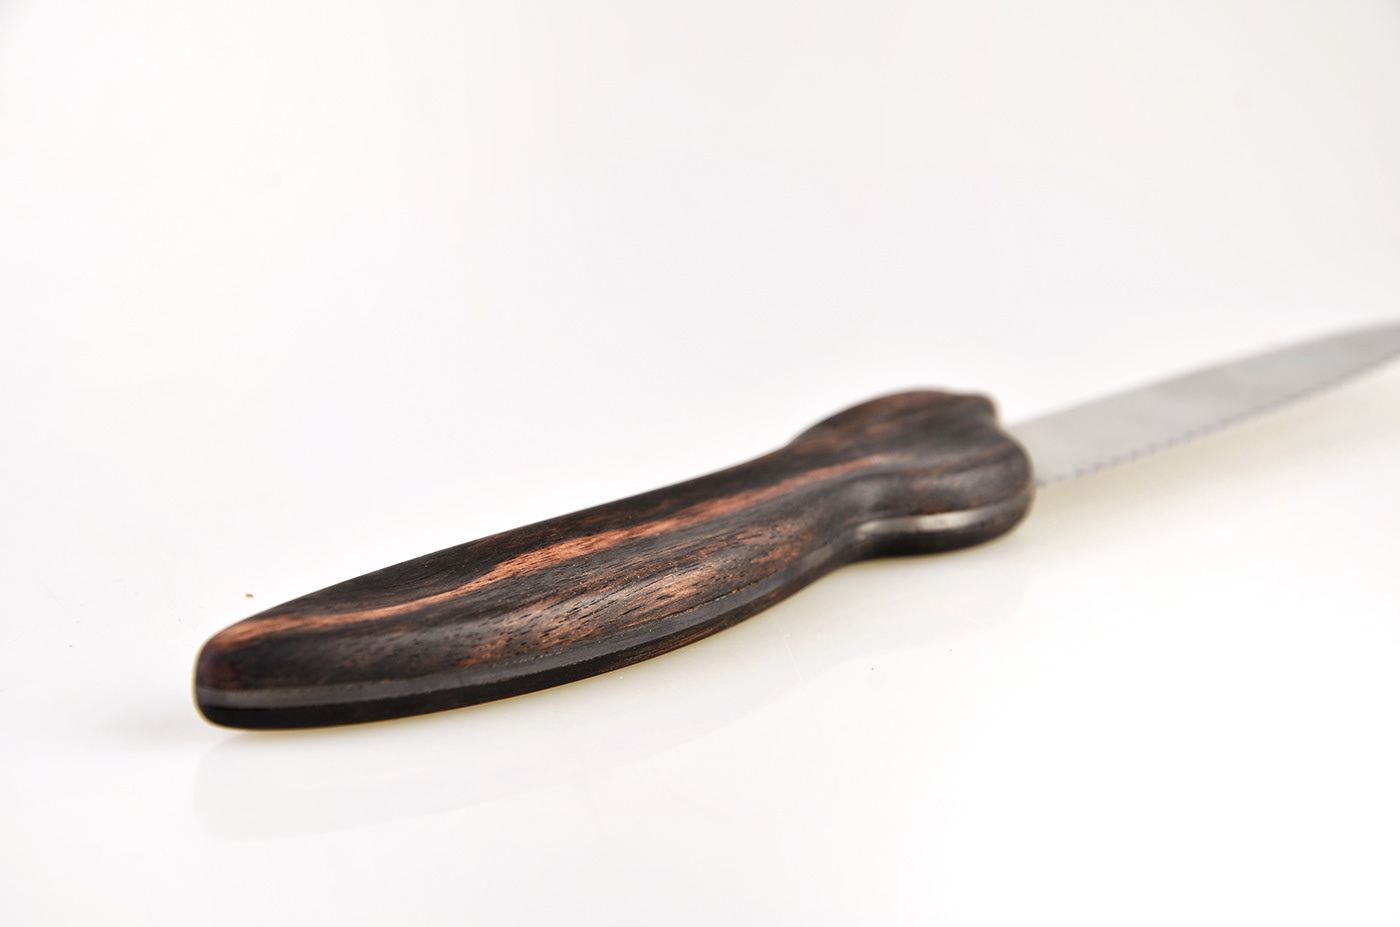 KITCHENWARE knife knife design Paring Knife product design 